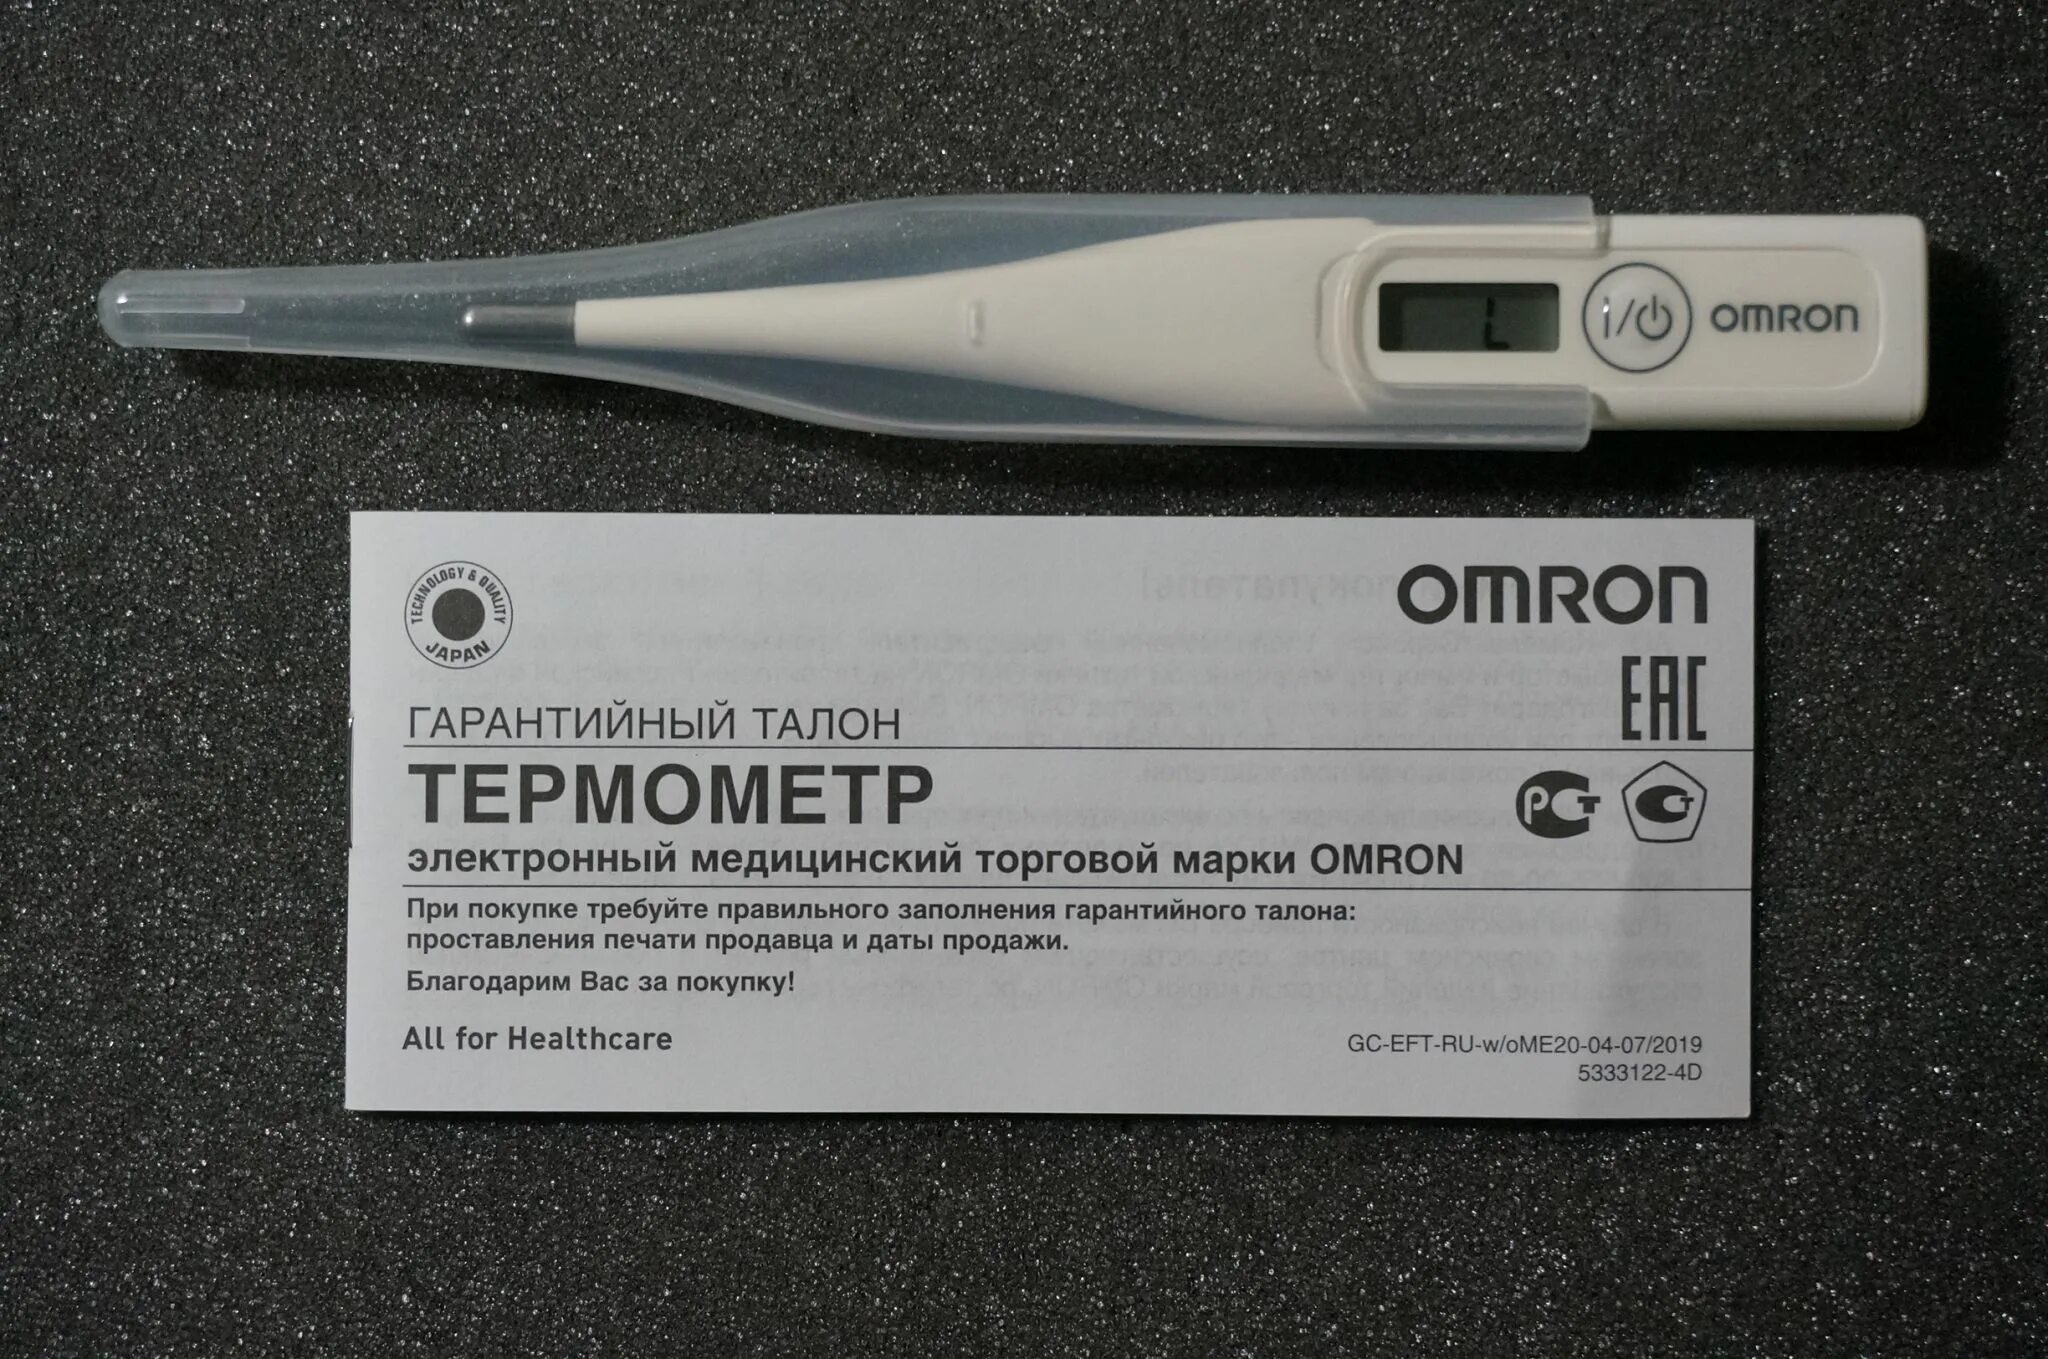 Термометр электронный Omron Eco Temp Basic (MC-246-ru). Термометр Eco Temp MC-246. Термометр медицинский Omron Eco Temp Basic. Омрон термометр MC-246 эко темп Бейсик.